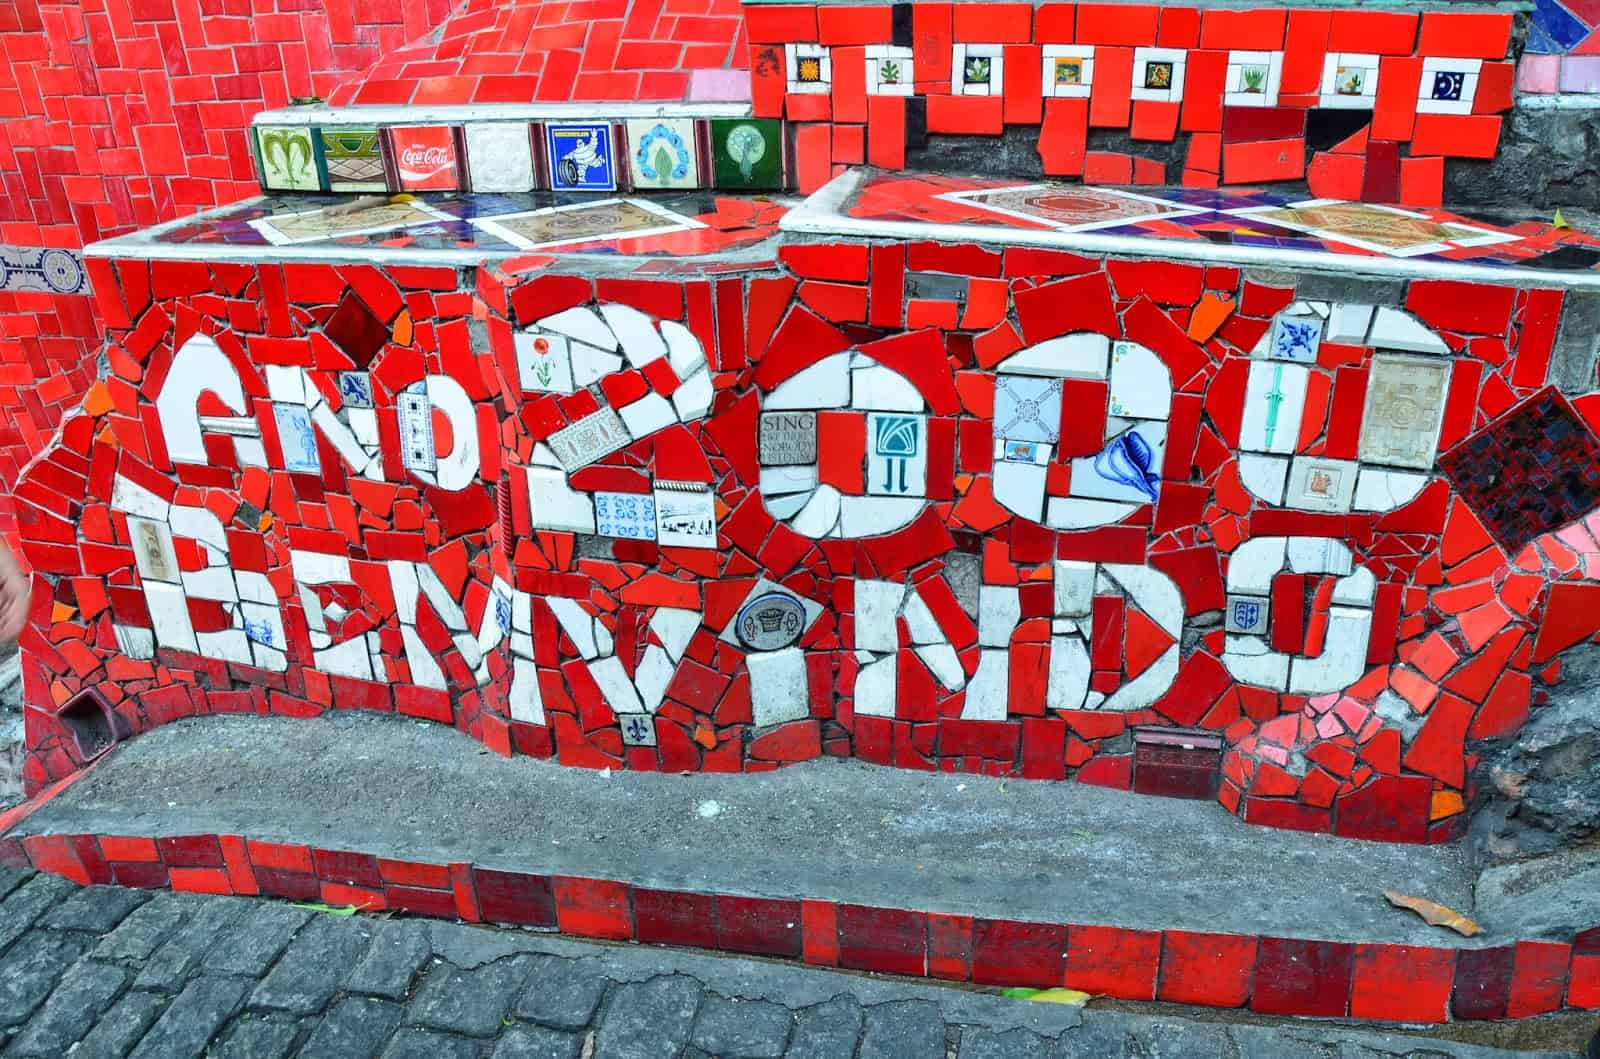 Welcome Year 2000 tiles at Escadaria Selarón in Rio de Janeiro, Brazil